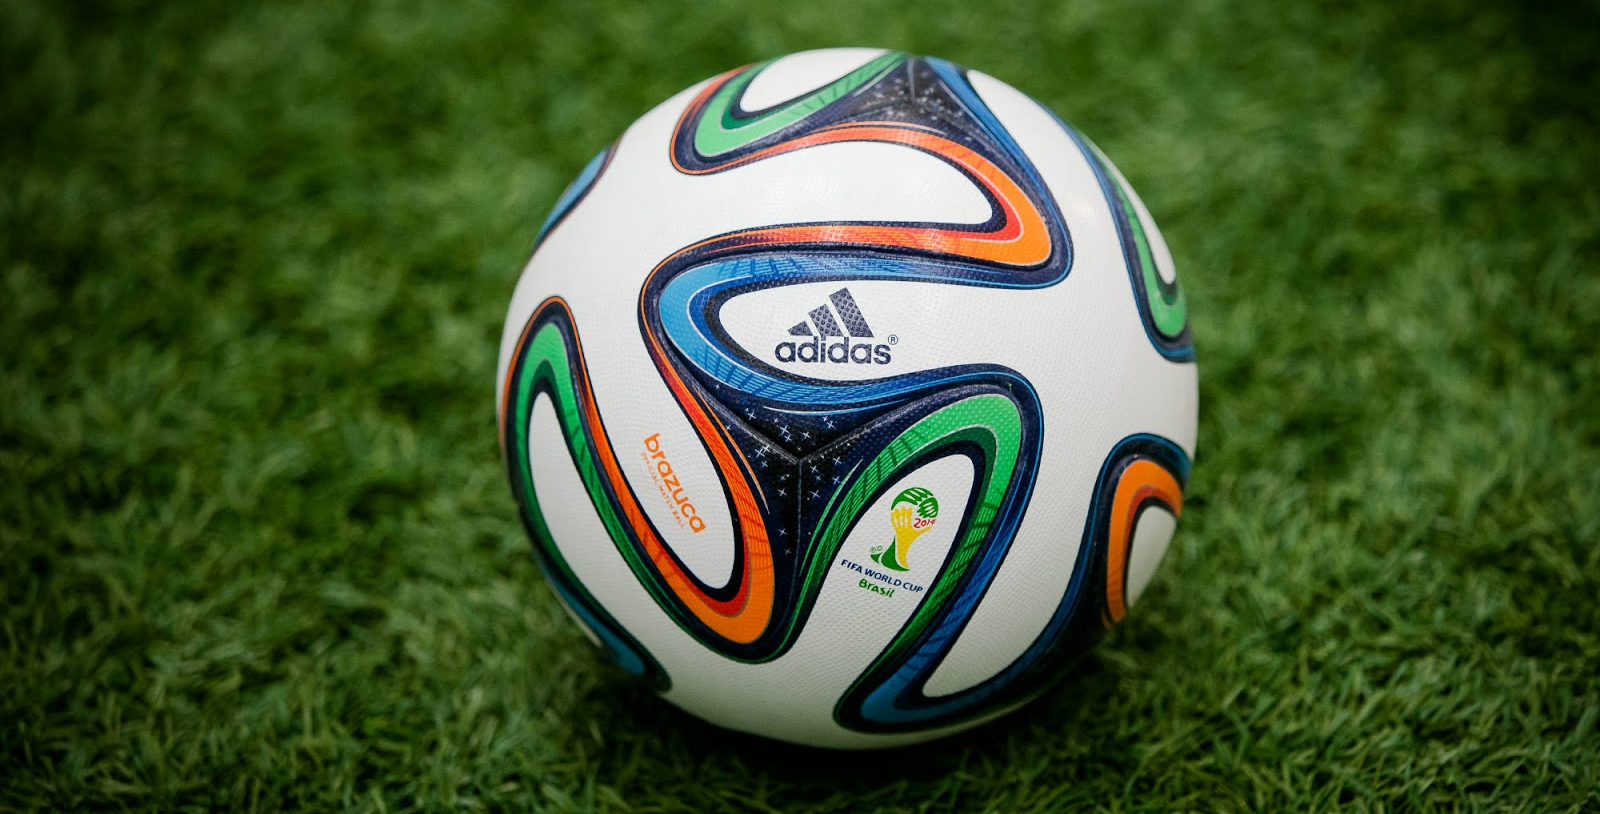 Ongemak Maxim deur Adidas WK 2014 Brazuca Voetbal - Voetbalshirts.com